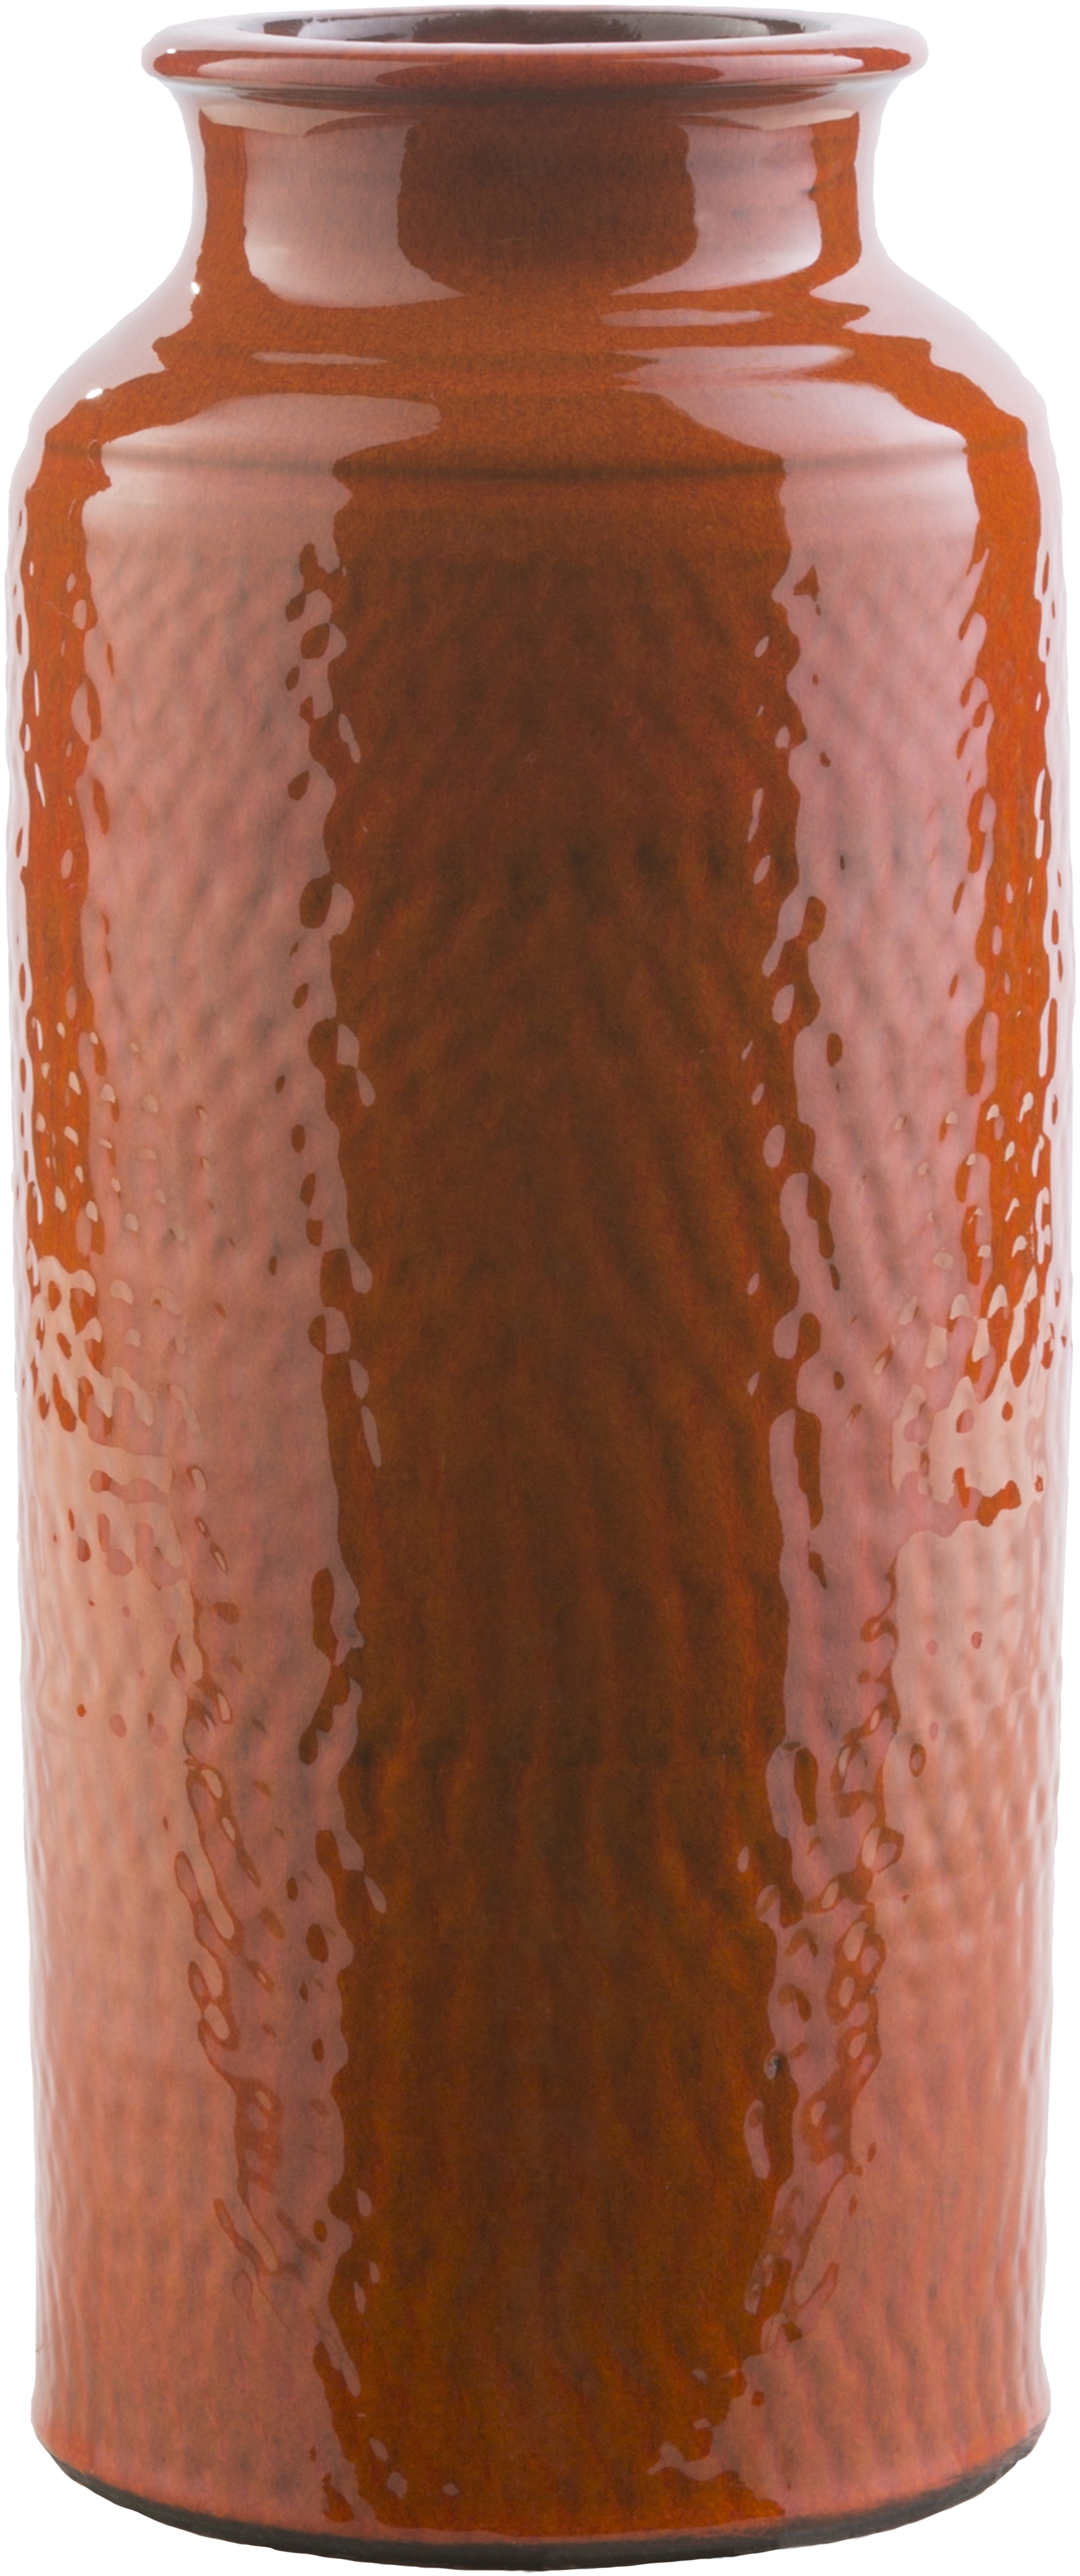 Zuniga 5.71 x 5.71 x 13.98 Table Vase - Image 0